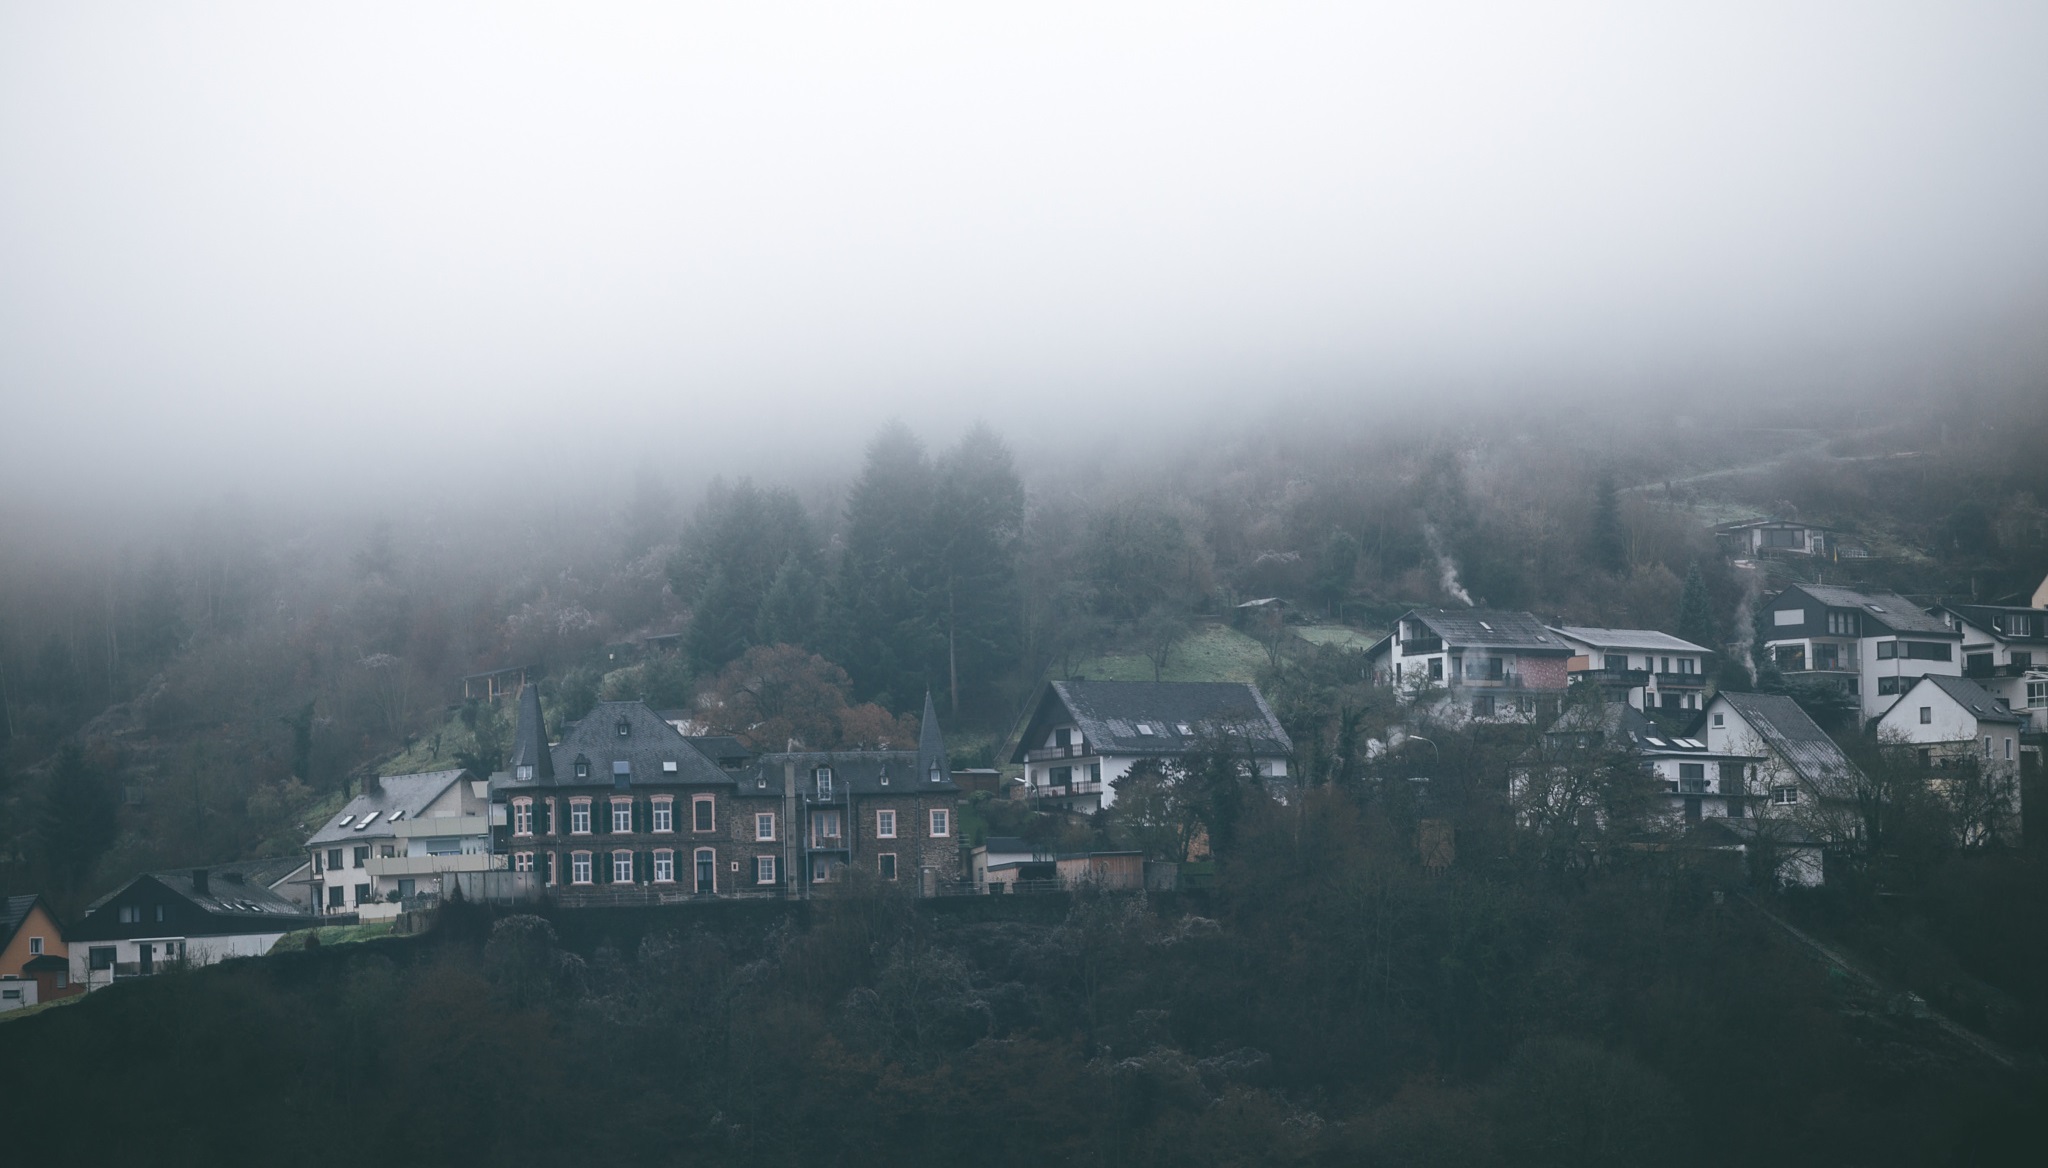 General 2048x1168 photography landscape mist house village